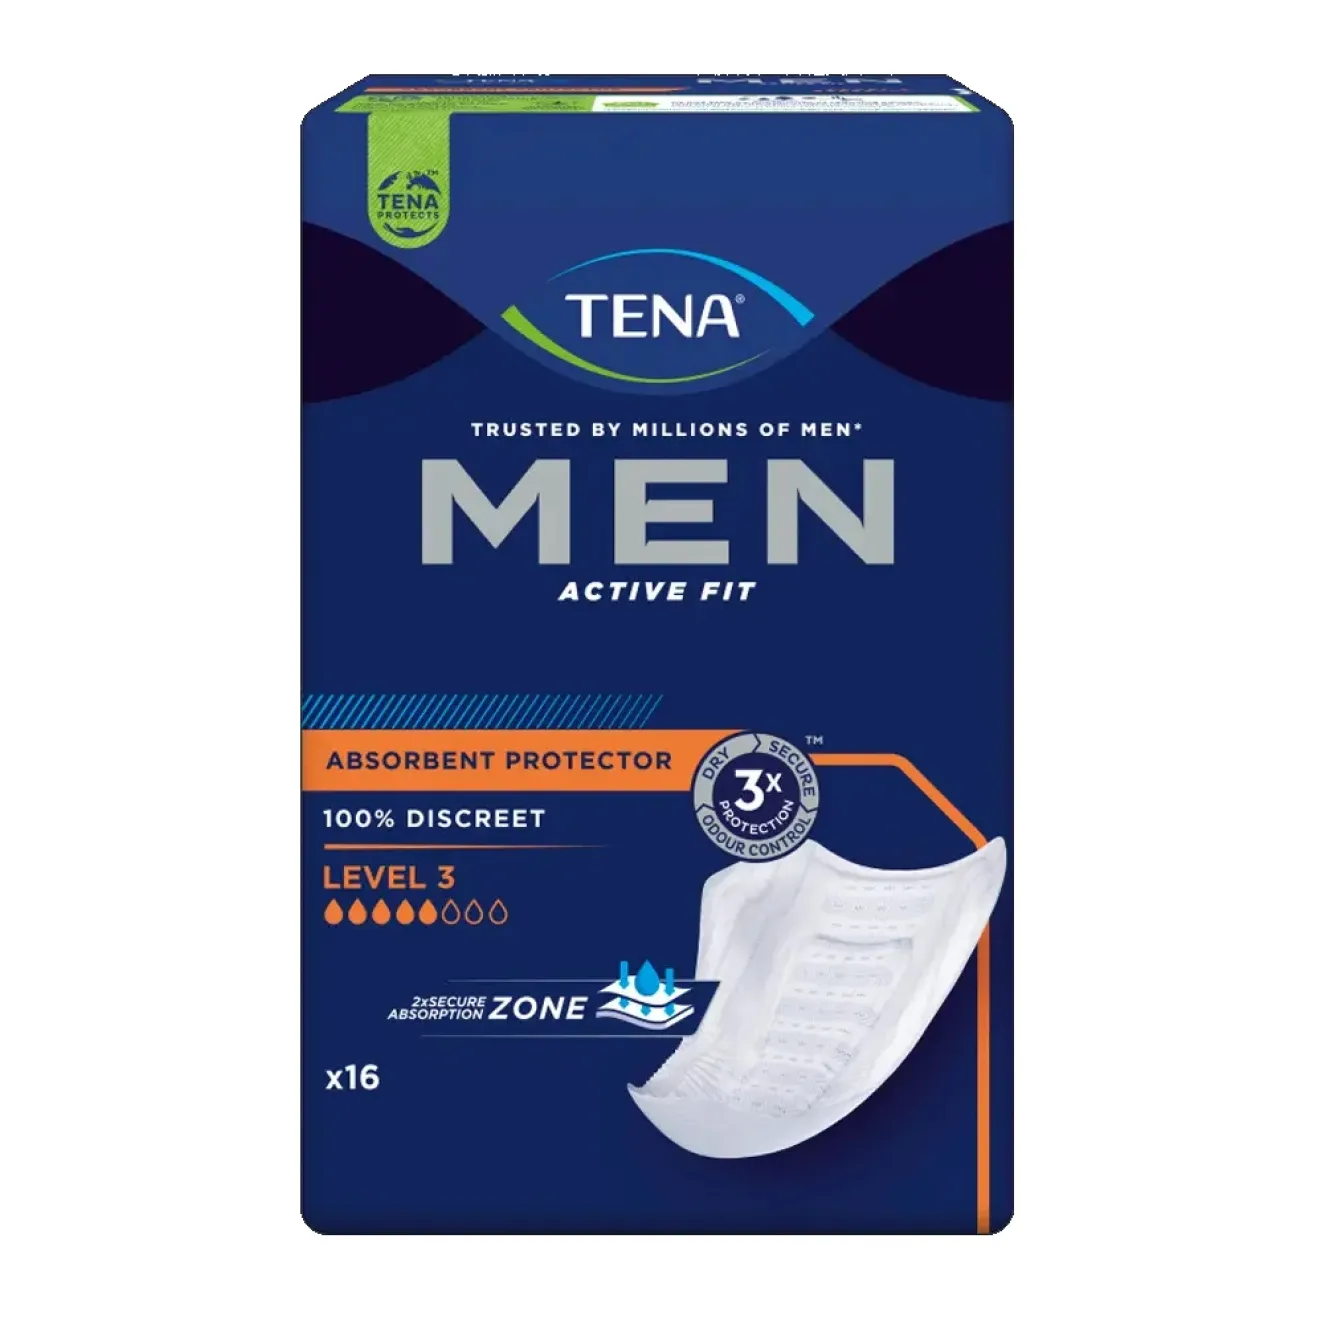 TENA MEN Active Fit Level 3 Inkontinenz Einlagen 16 ST